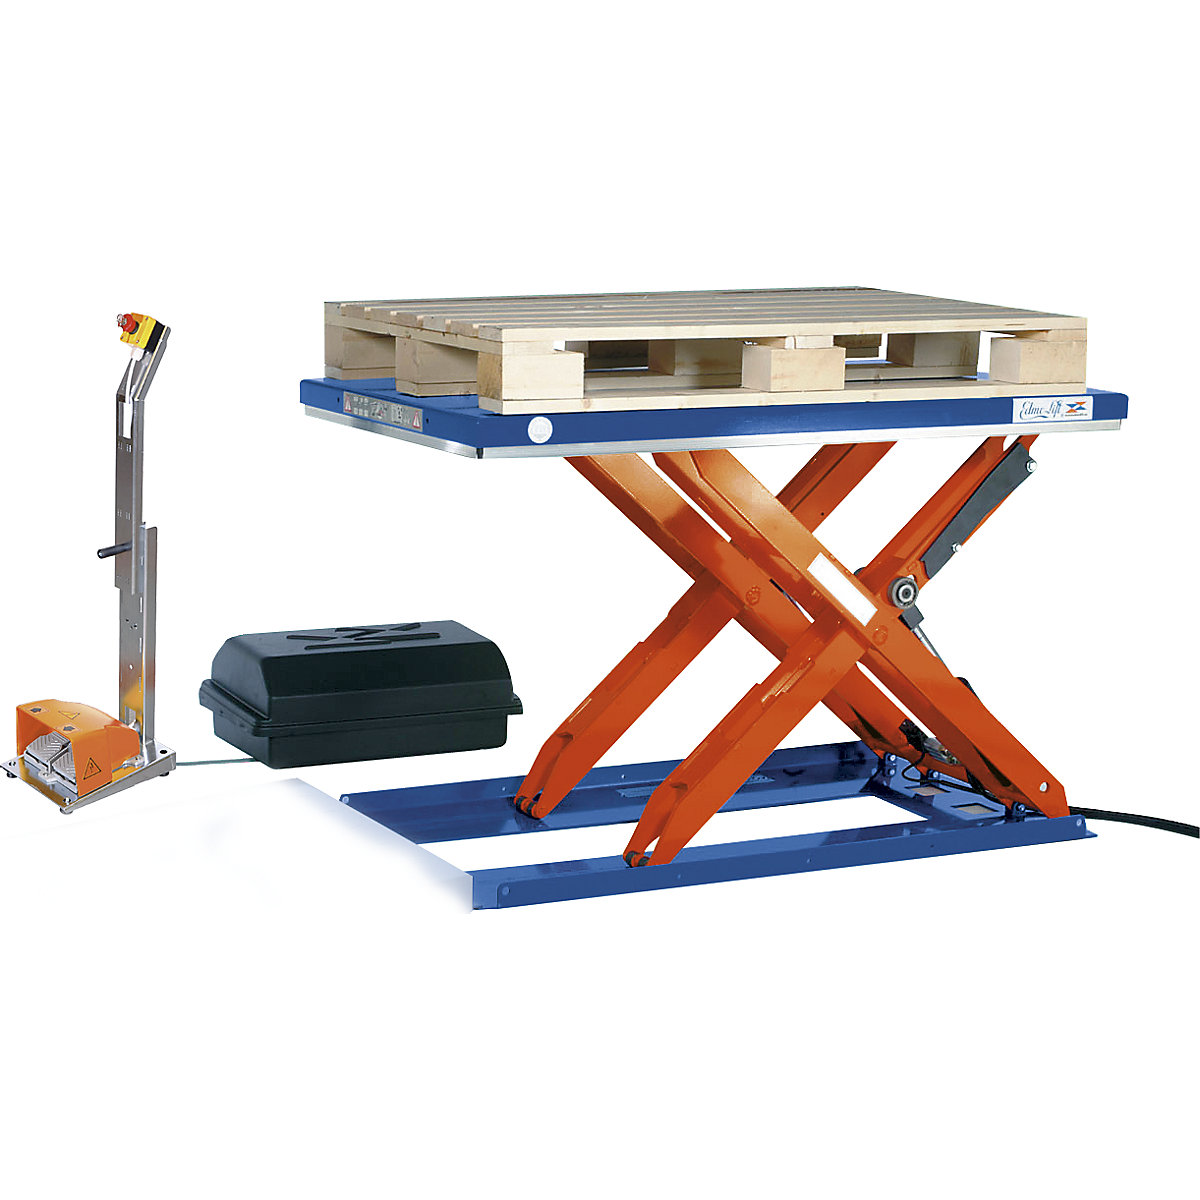 Lapos emelőasztal – Edmolift, h x szé 1500 x 800 mm, emelési tartomány 800 mm-ig, zárt emelőlap, 400 V, lábbal irányítható kezelőegység-5